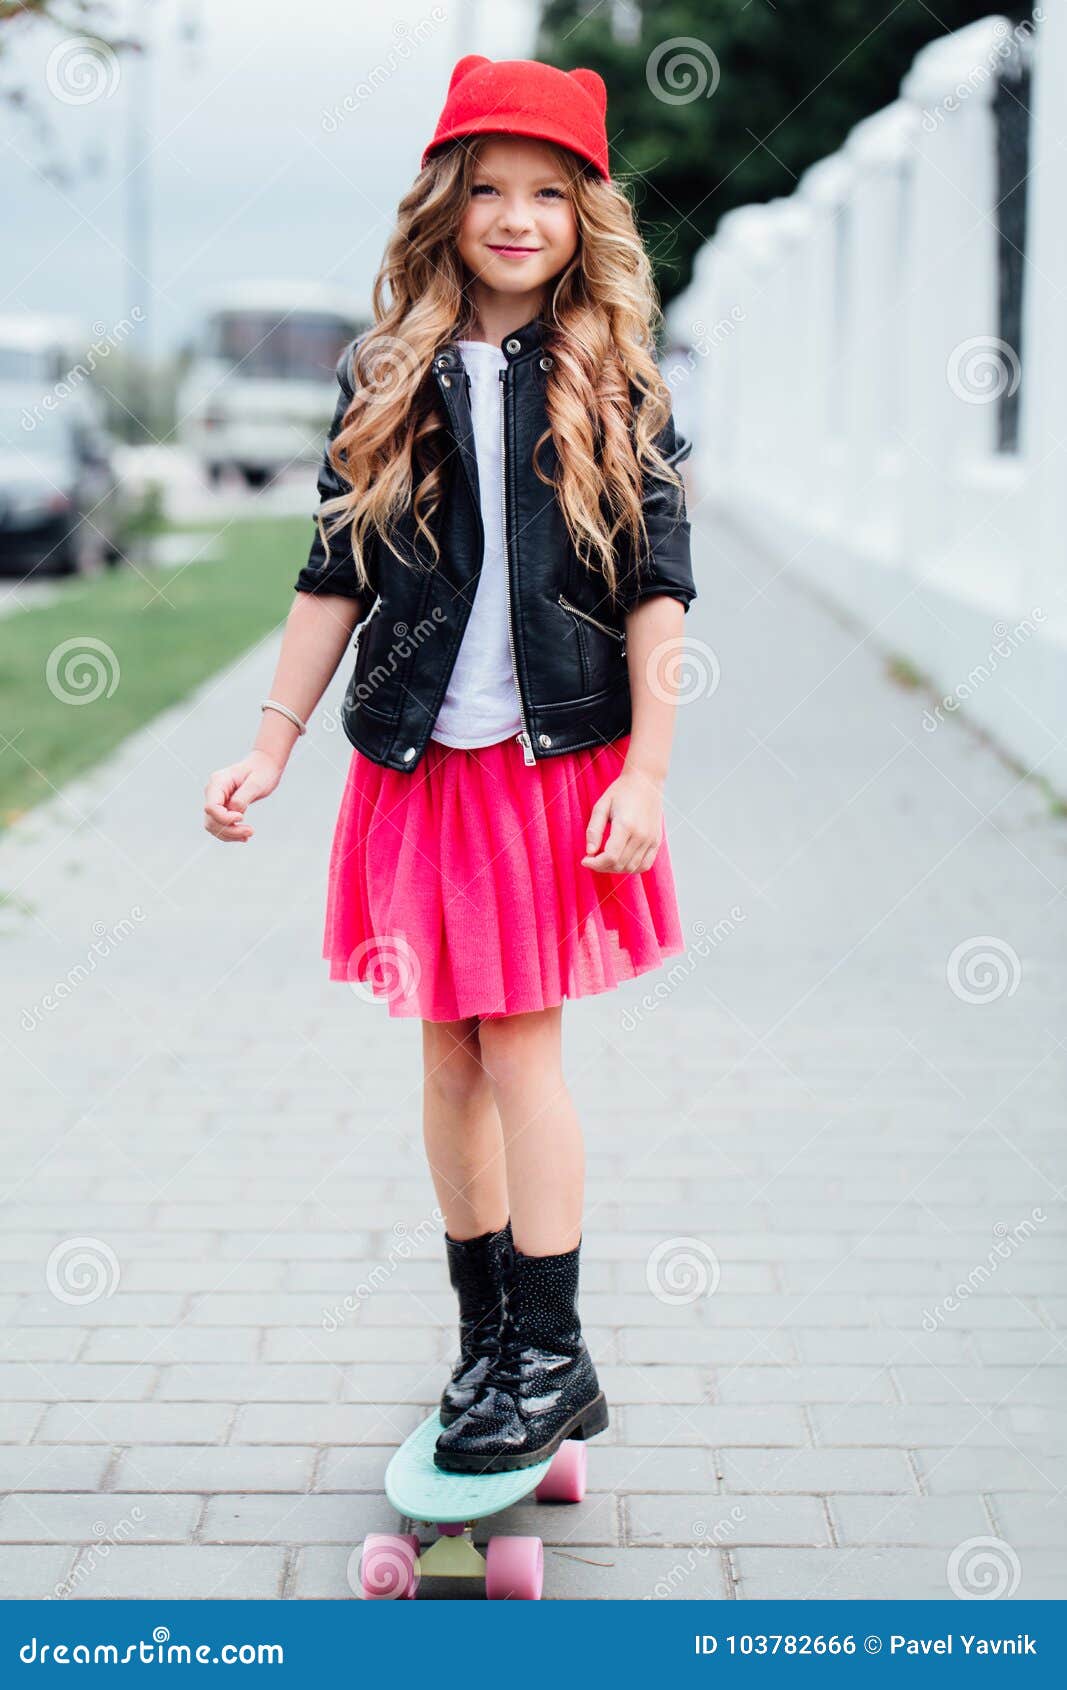 little girl biker boots